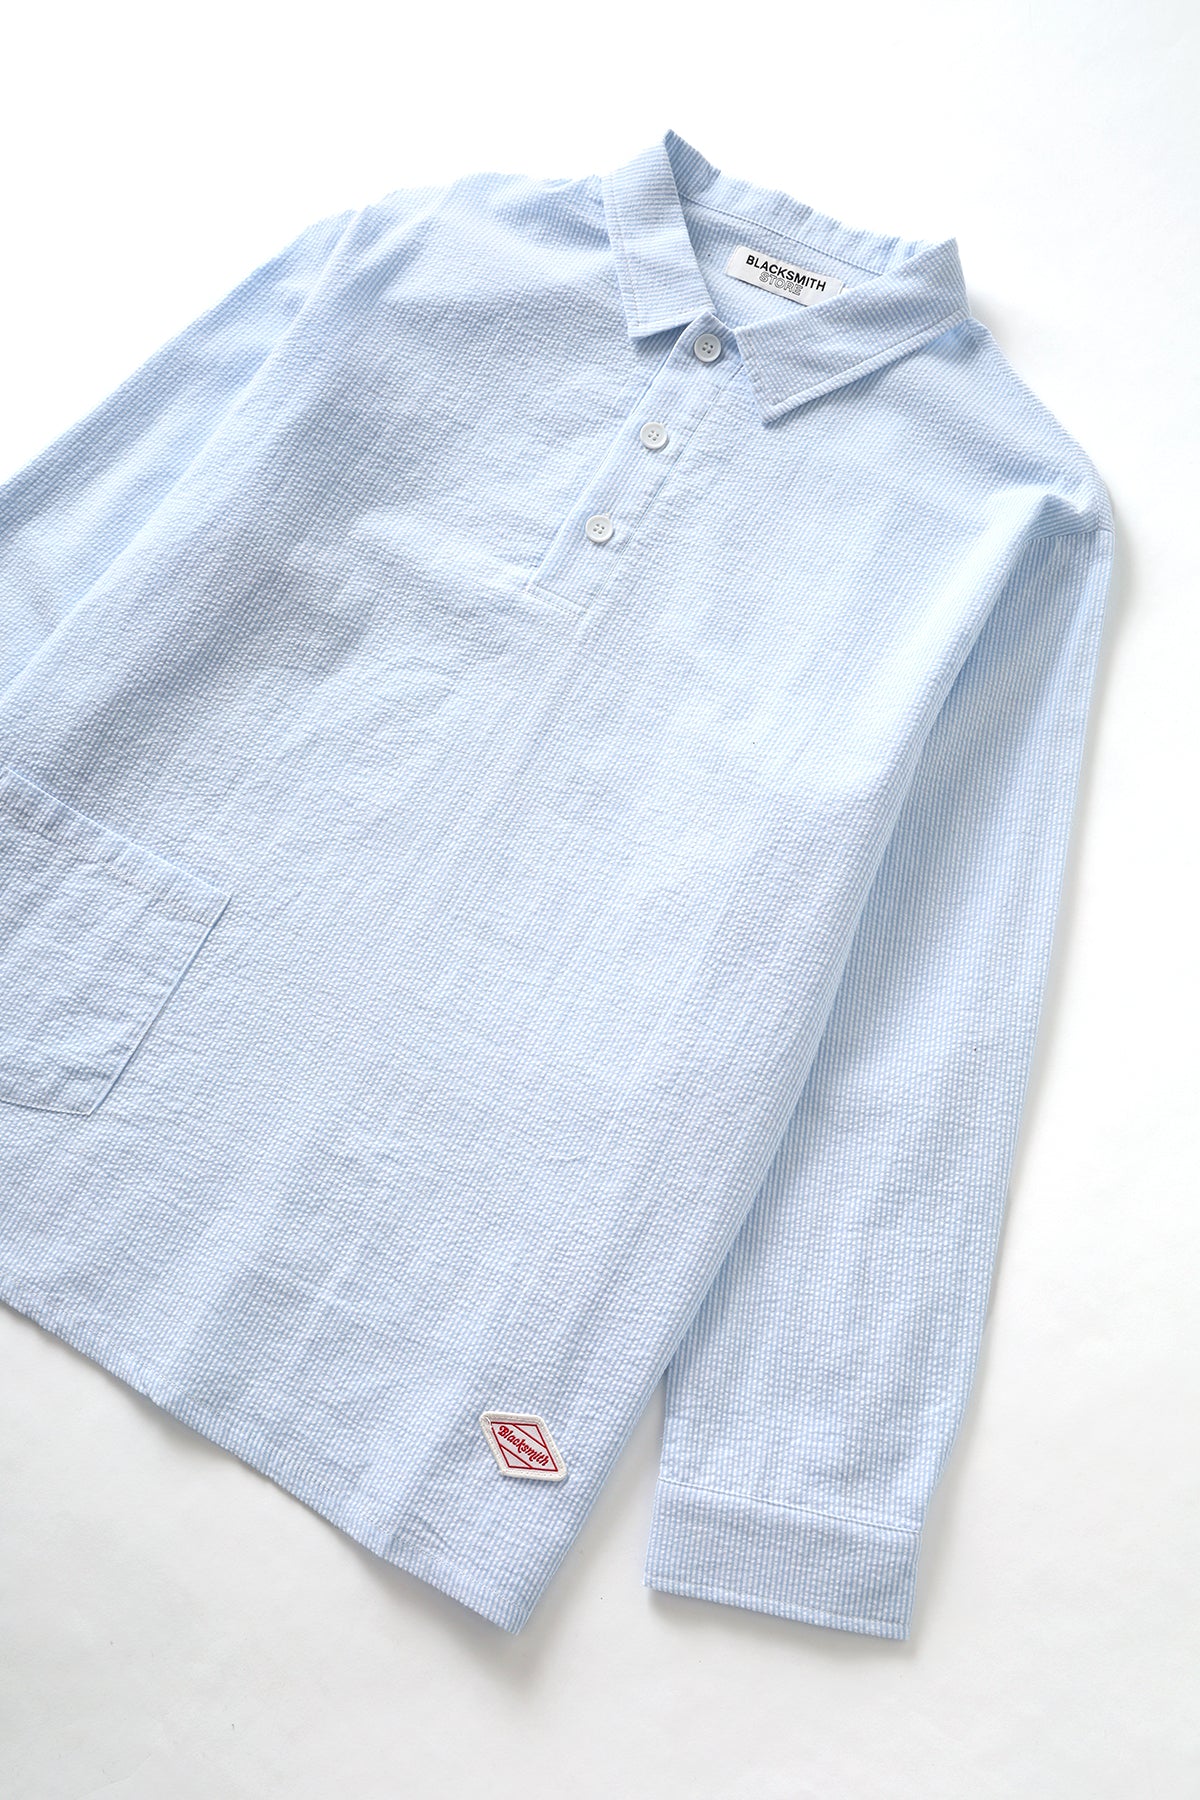 Blacksmith - Long Sleeved Popover Shirt - Blue Seersucker